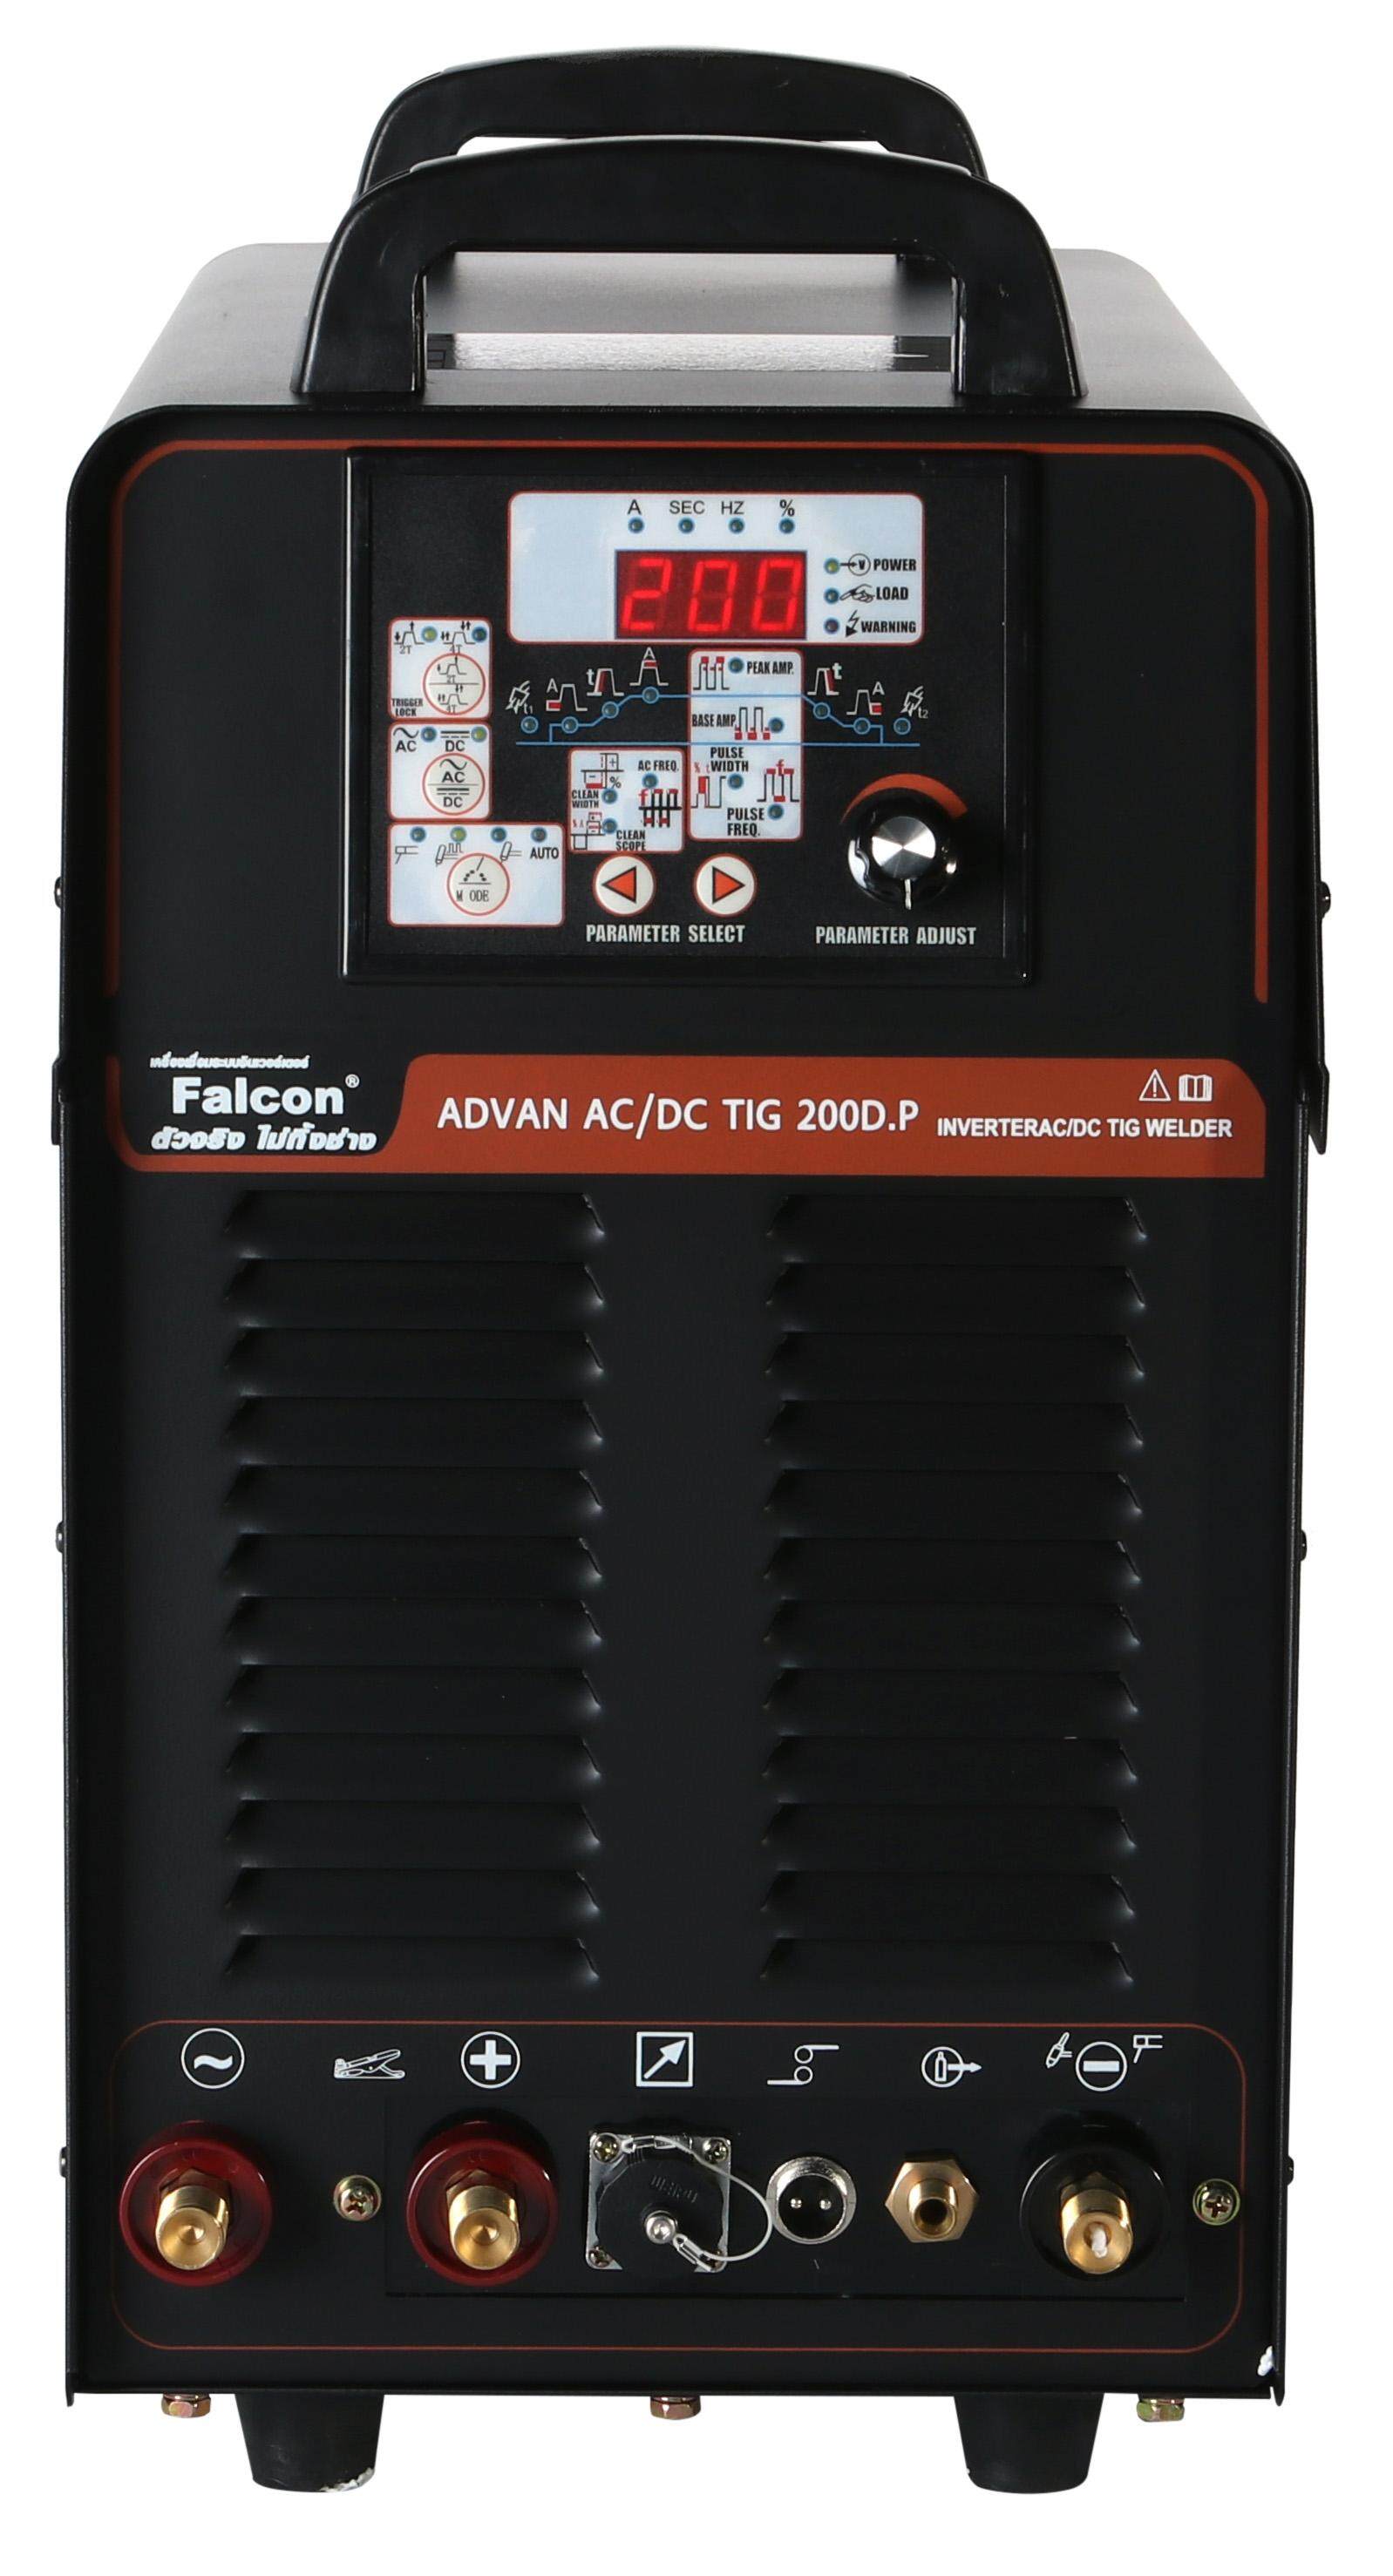 เครื่องเชื่อมอลูมิเนียม Falcon ADVAN AC/DC TIG 200D.P เครื่องเชื่อมไฟฟ้า ตู้เชื่อม (สีดำ) เชื่อมโลหะได้ทุกชนิด